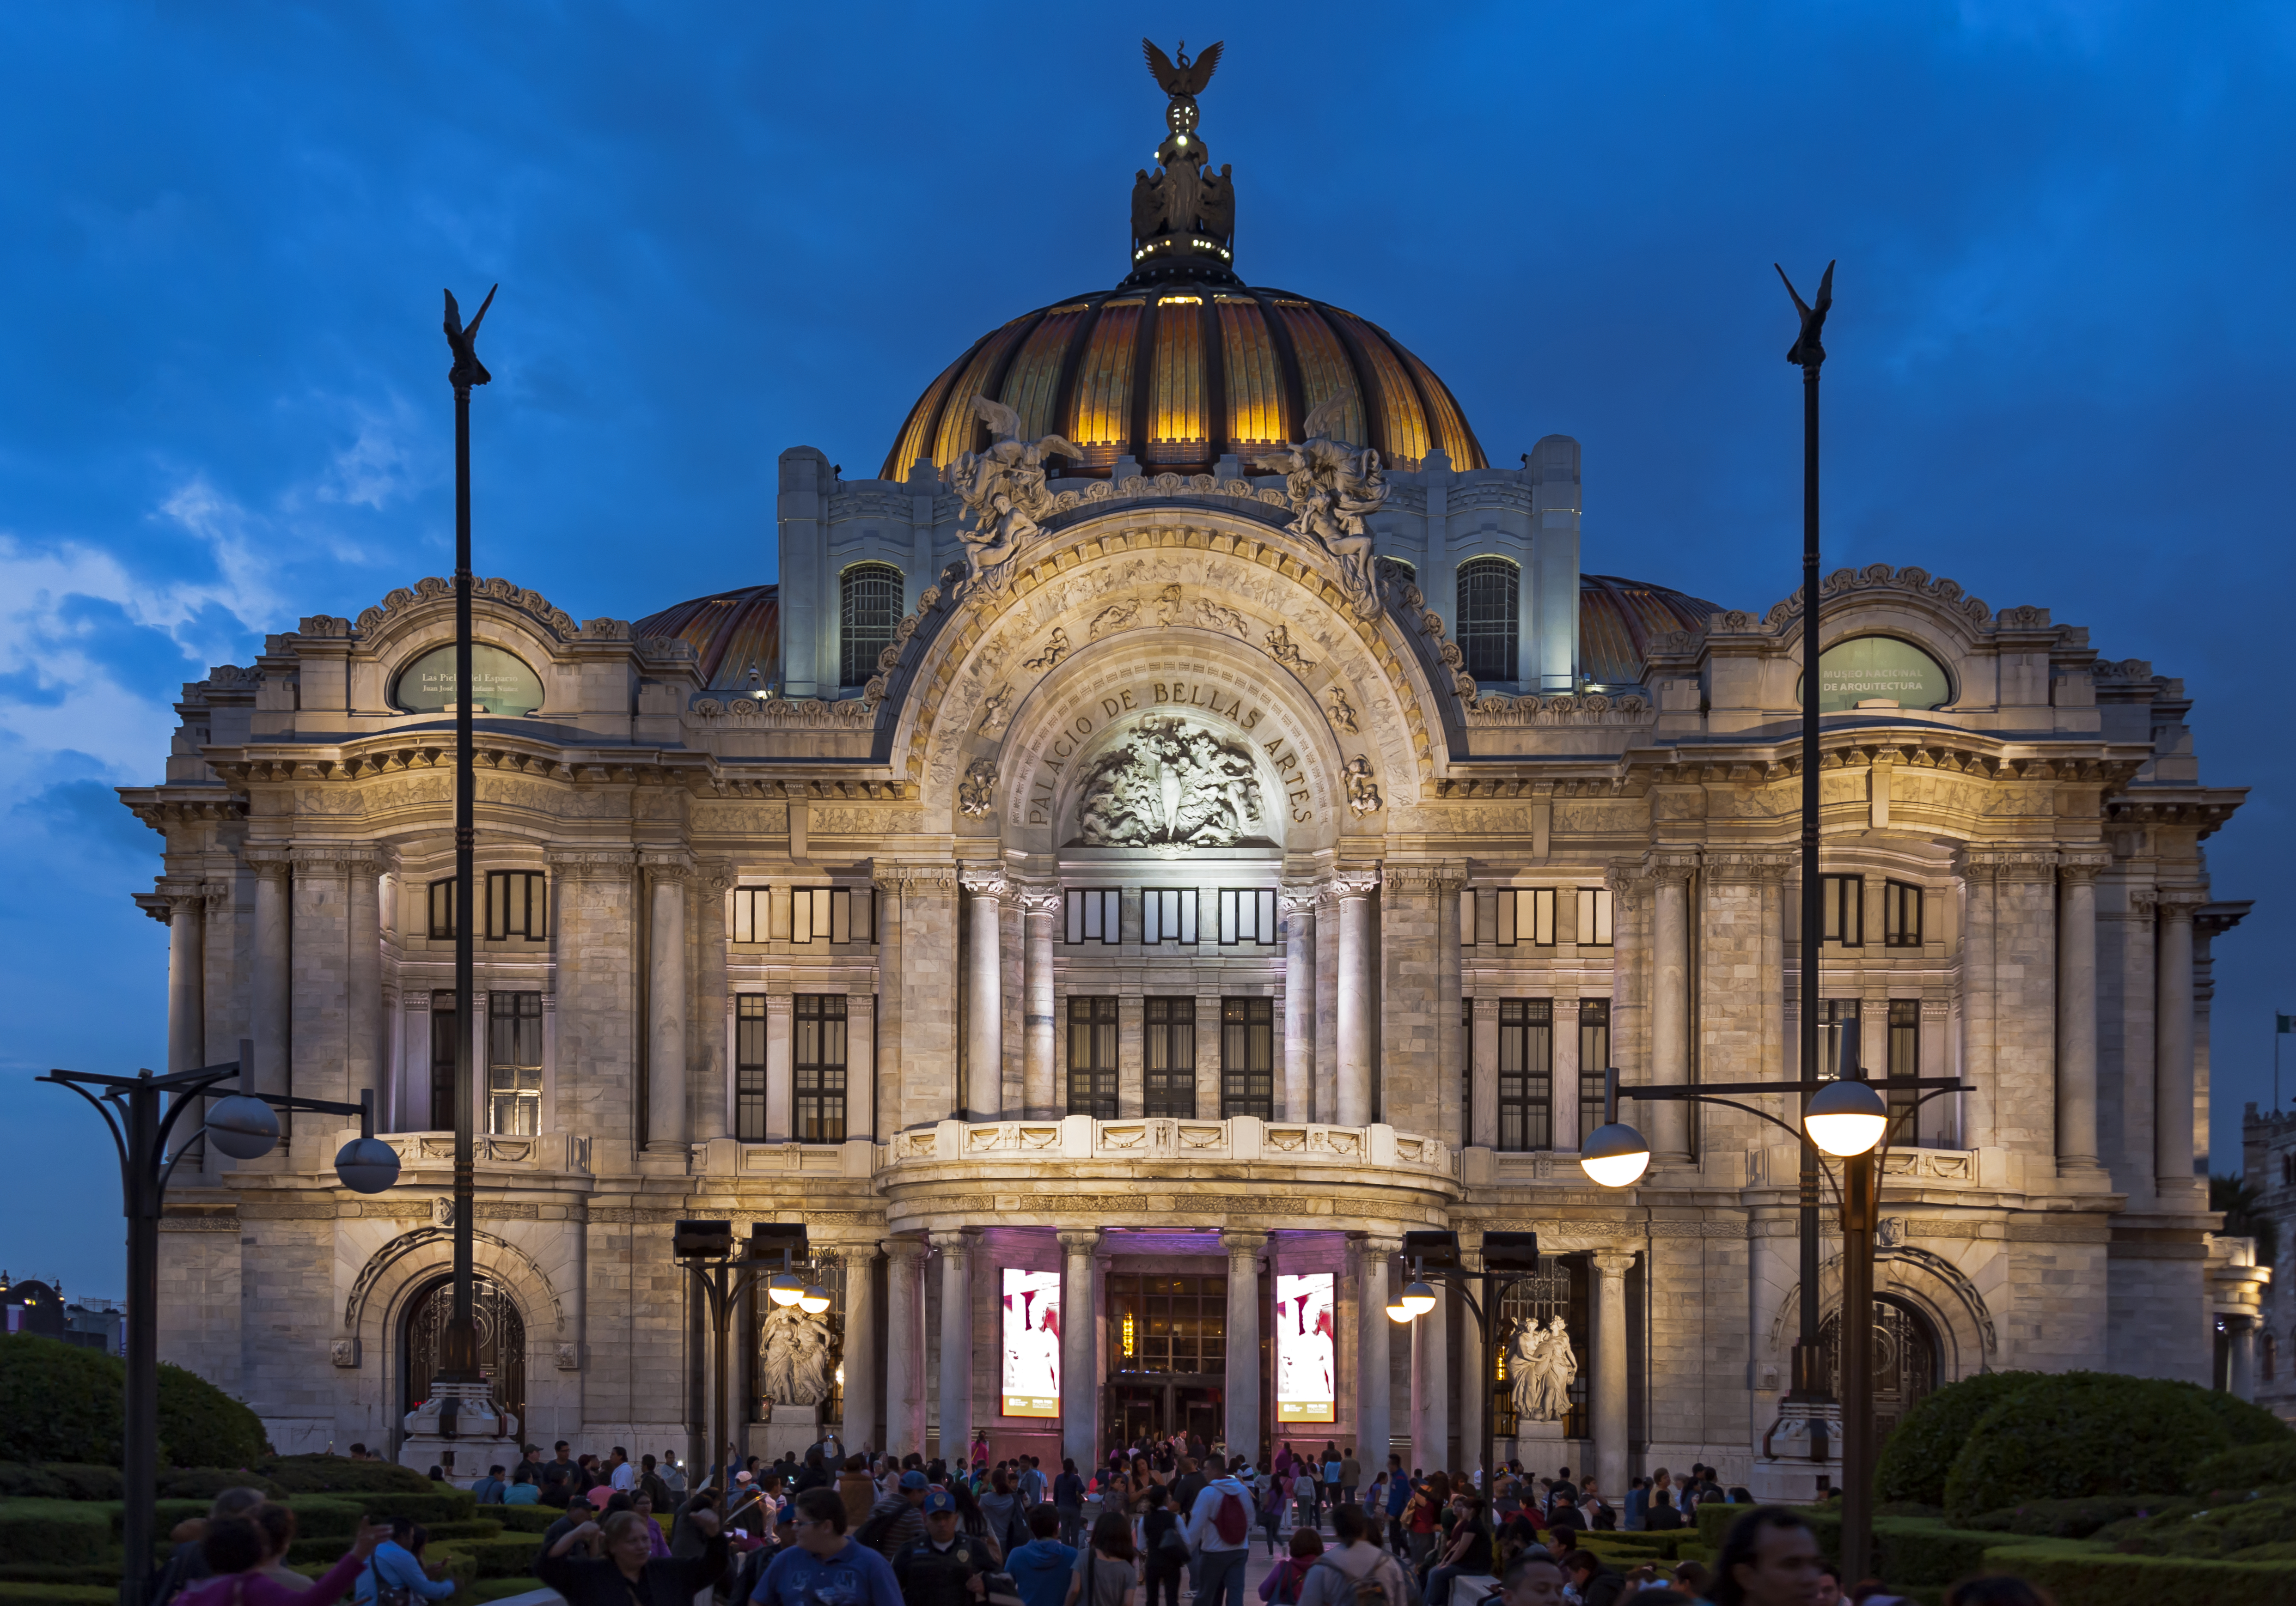 Front view of Palacio de Bellas Artes at night